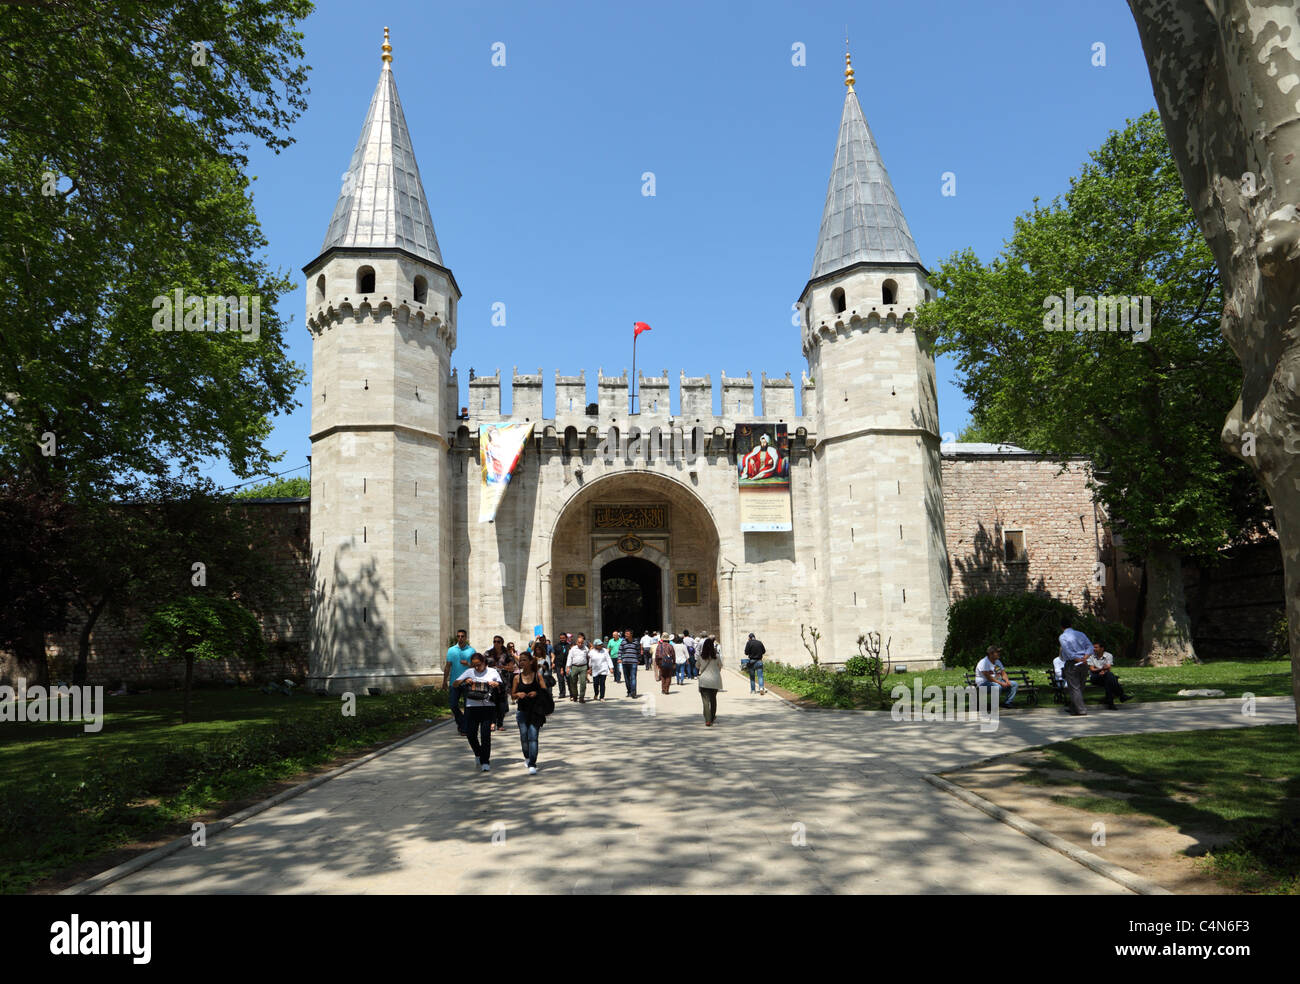 Puerta de entrada al Palacio de Topkapi, en Estambul, Turquía. Foto tomada en 25 de mayo de 2011 Foto de stock